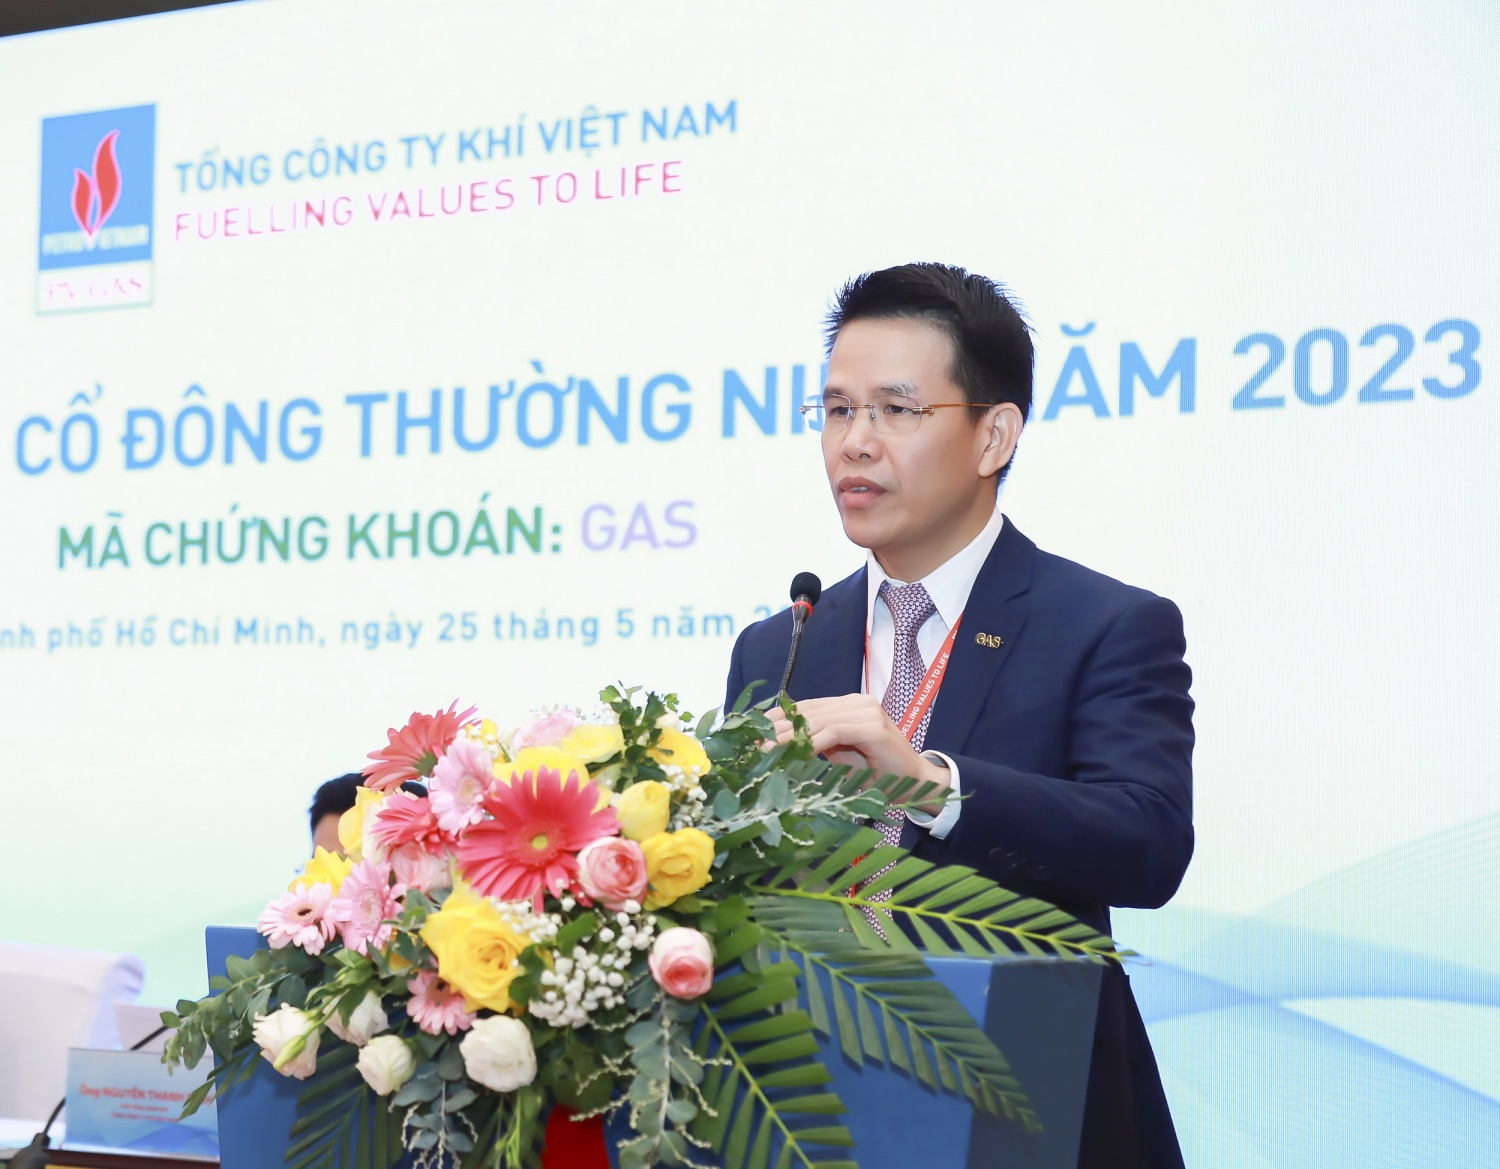 Hình 2. Ông Phạm Văn Phong – Tổng giám đốc PV GAS báo cáo kết quả năm 2023, khẳng định quyết tâm và nỗ lực phát triển doanh nghiệp tiên phong ngành công nghiệp khí